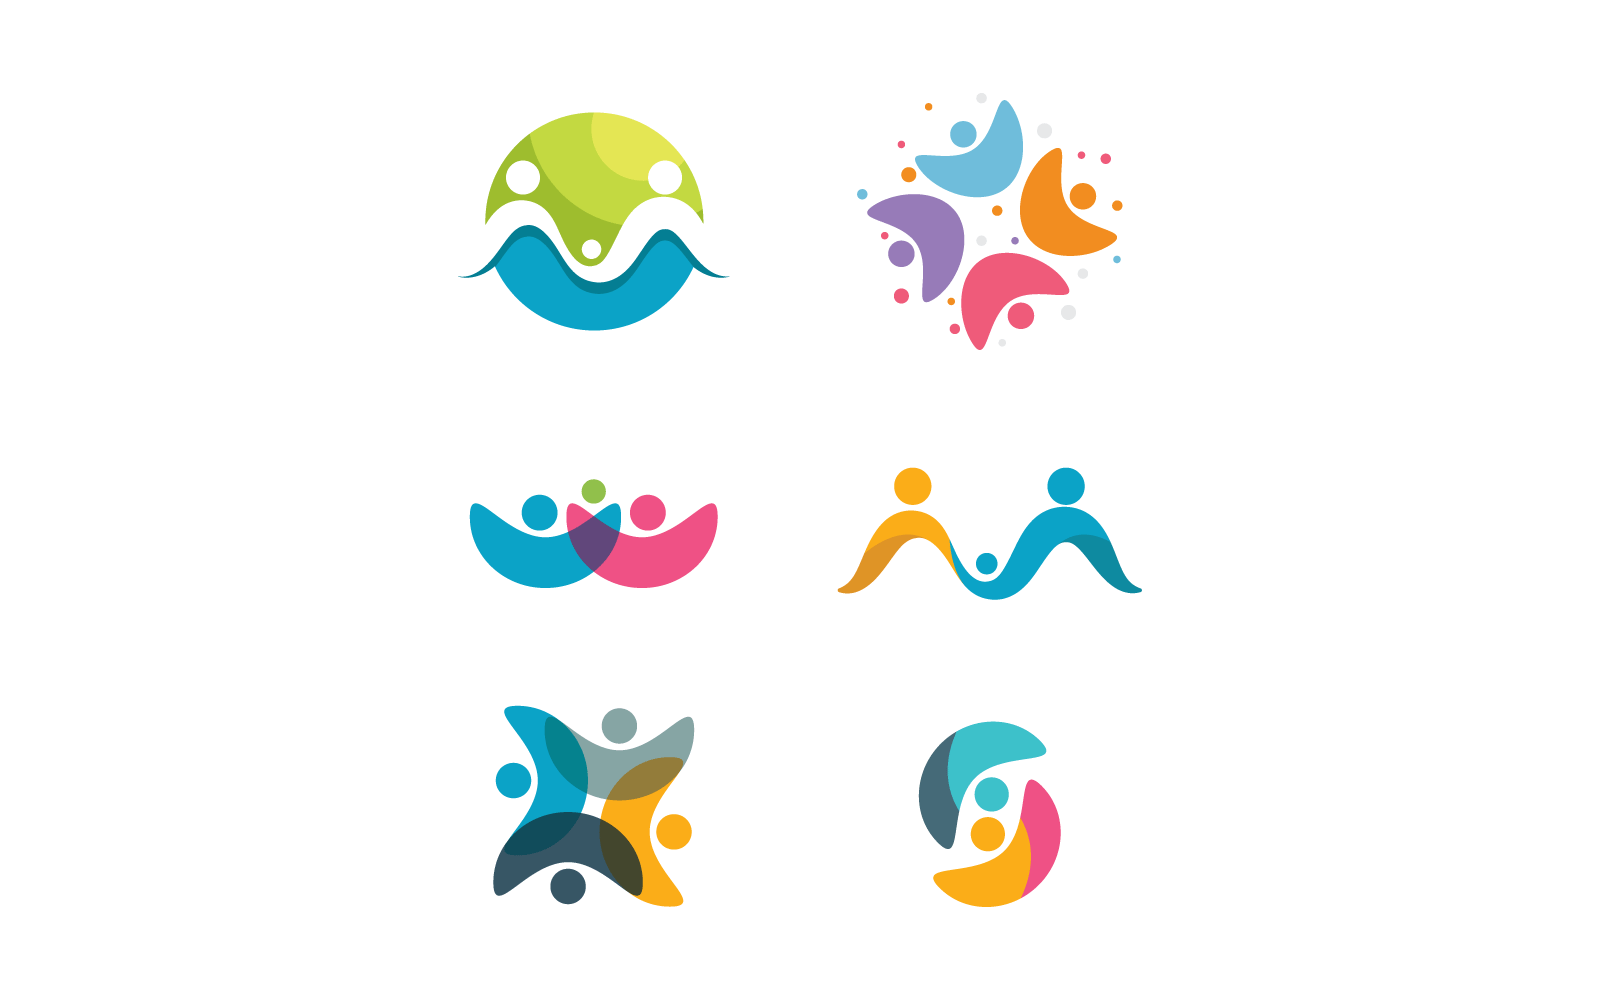 Плоский дизайн иллюстрации логотипа сообщества, сети и социальных сетей